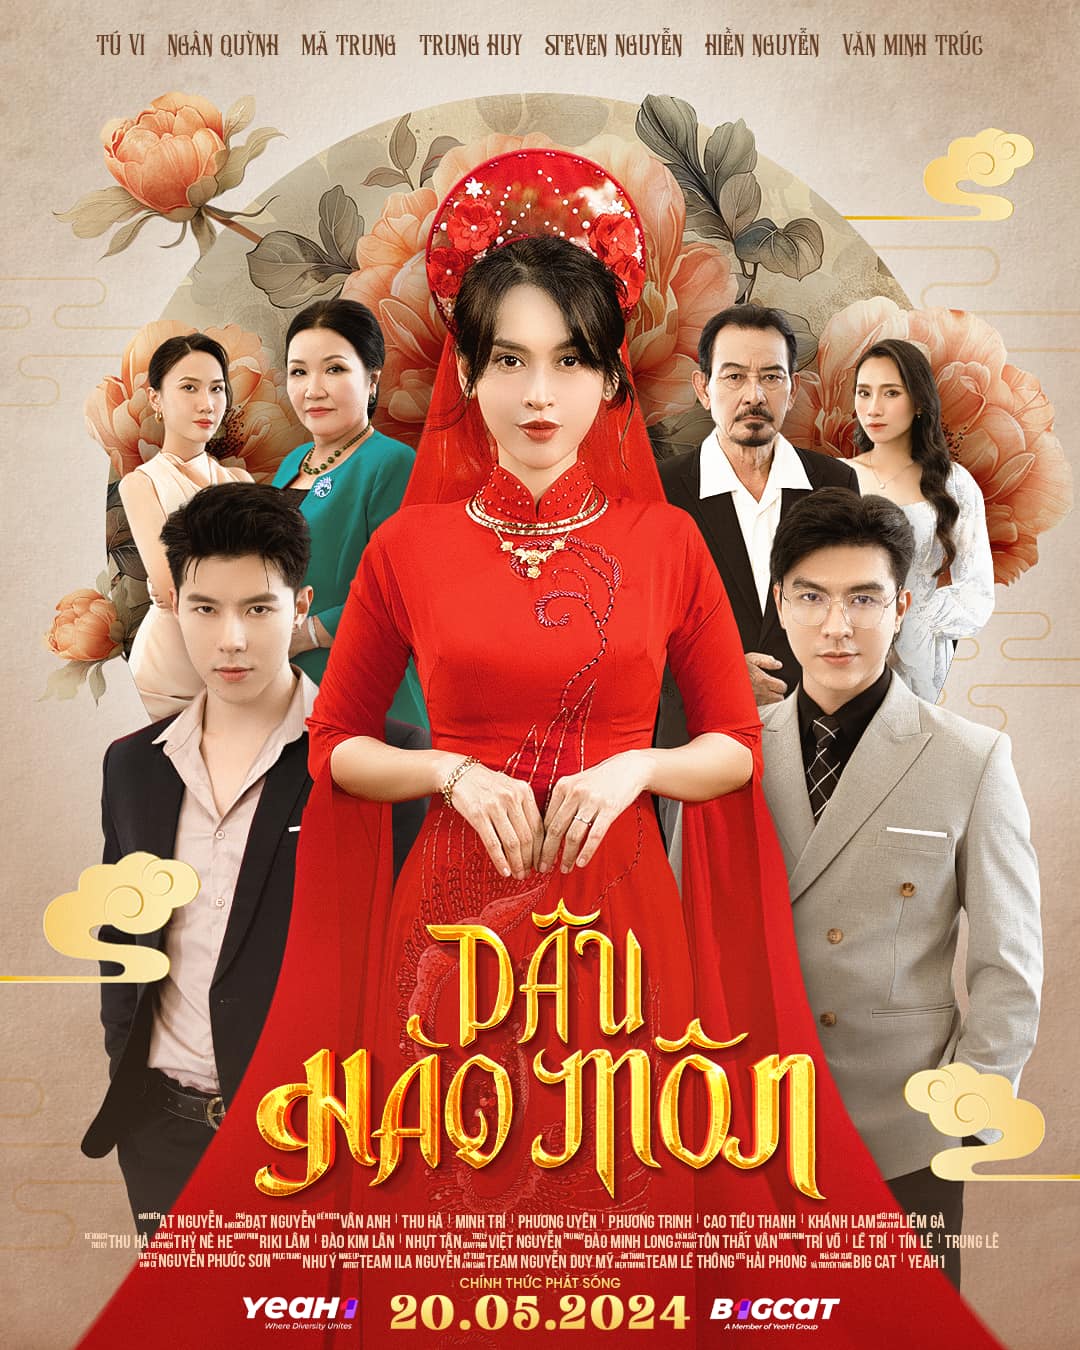 Bộ phim 'Dâu hào môn' với sự tham gia của Tú Vi, Trung Huy, Steven Nguyễn, Ngân Quỳnh... thu hút sự quan tâm lớn từ công chúng